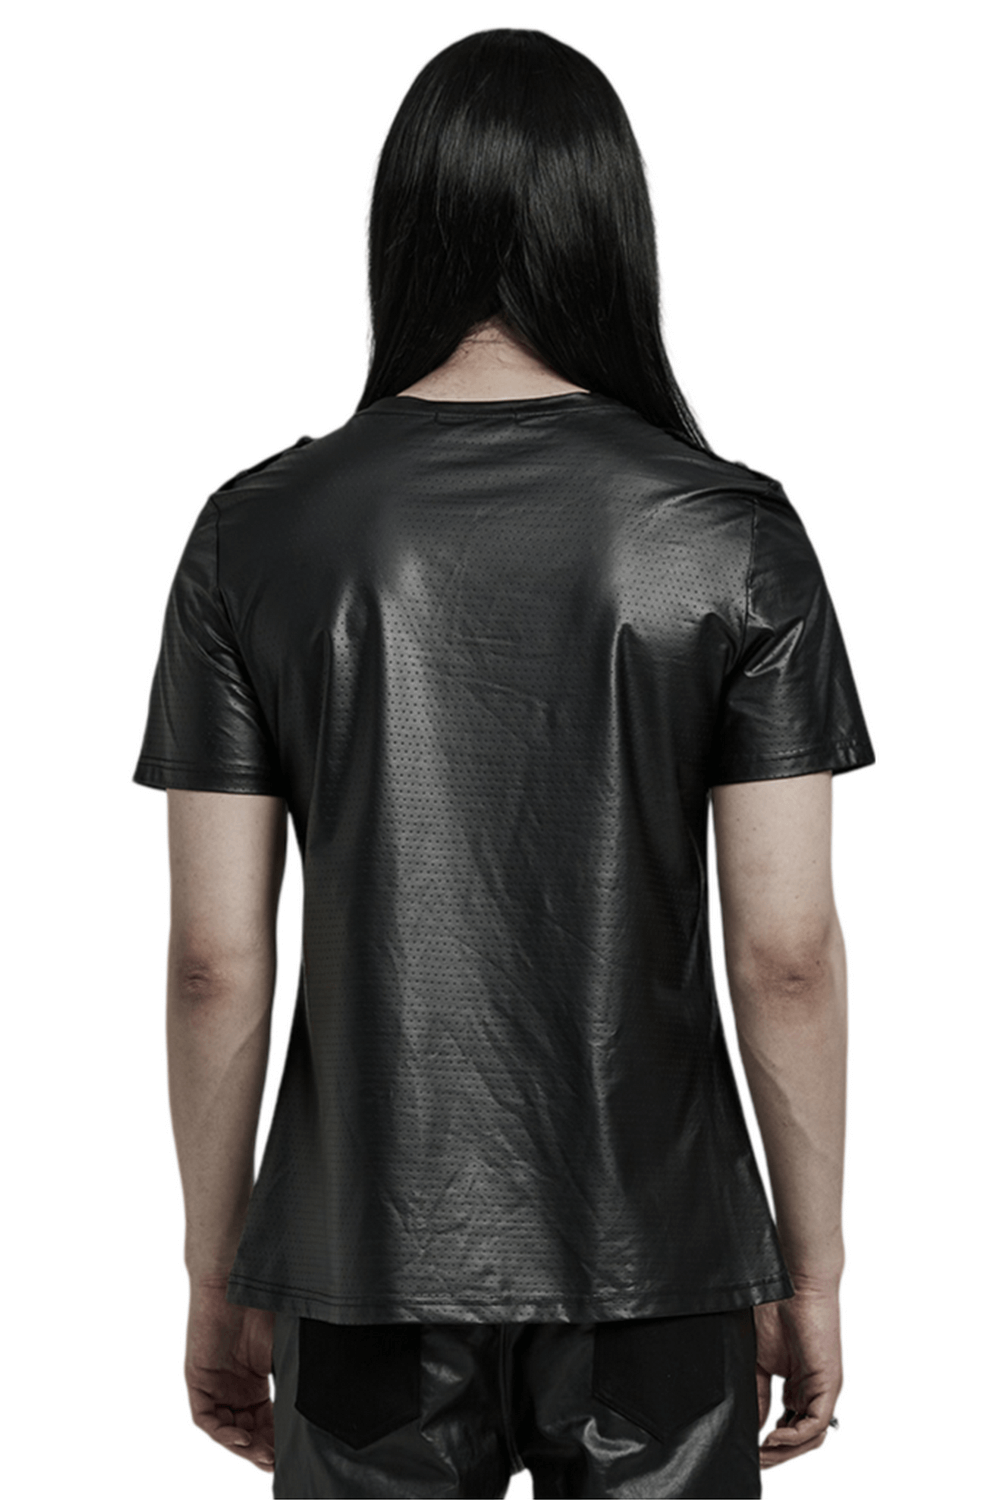 T-shirt Urban Black Mesh pour hommes avec poche perforée sur le devant